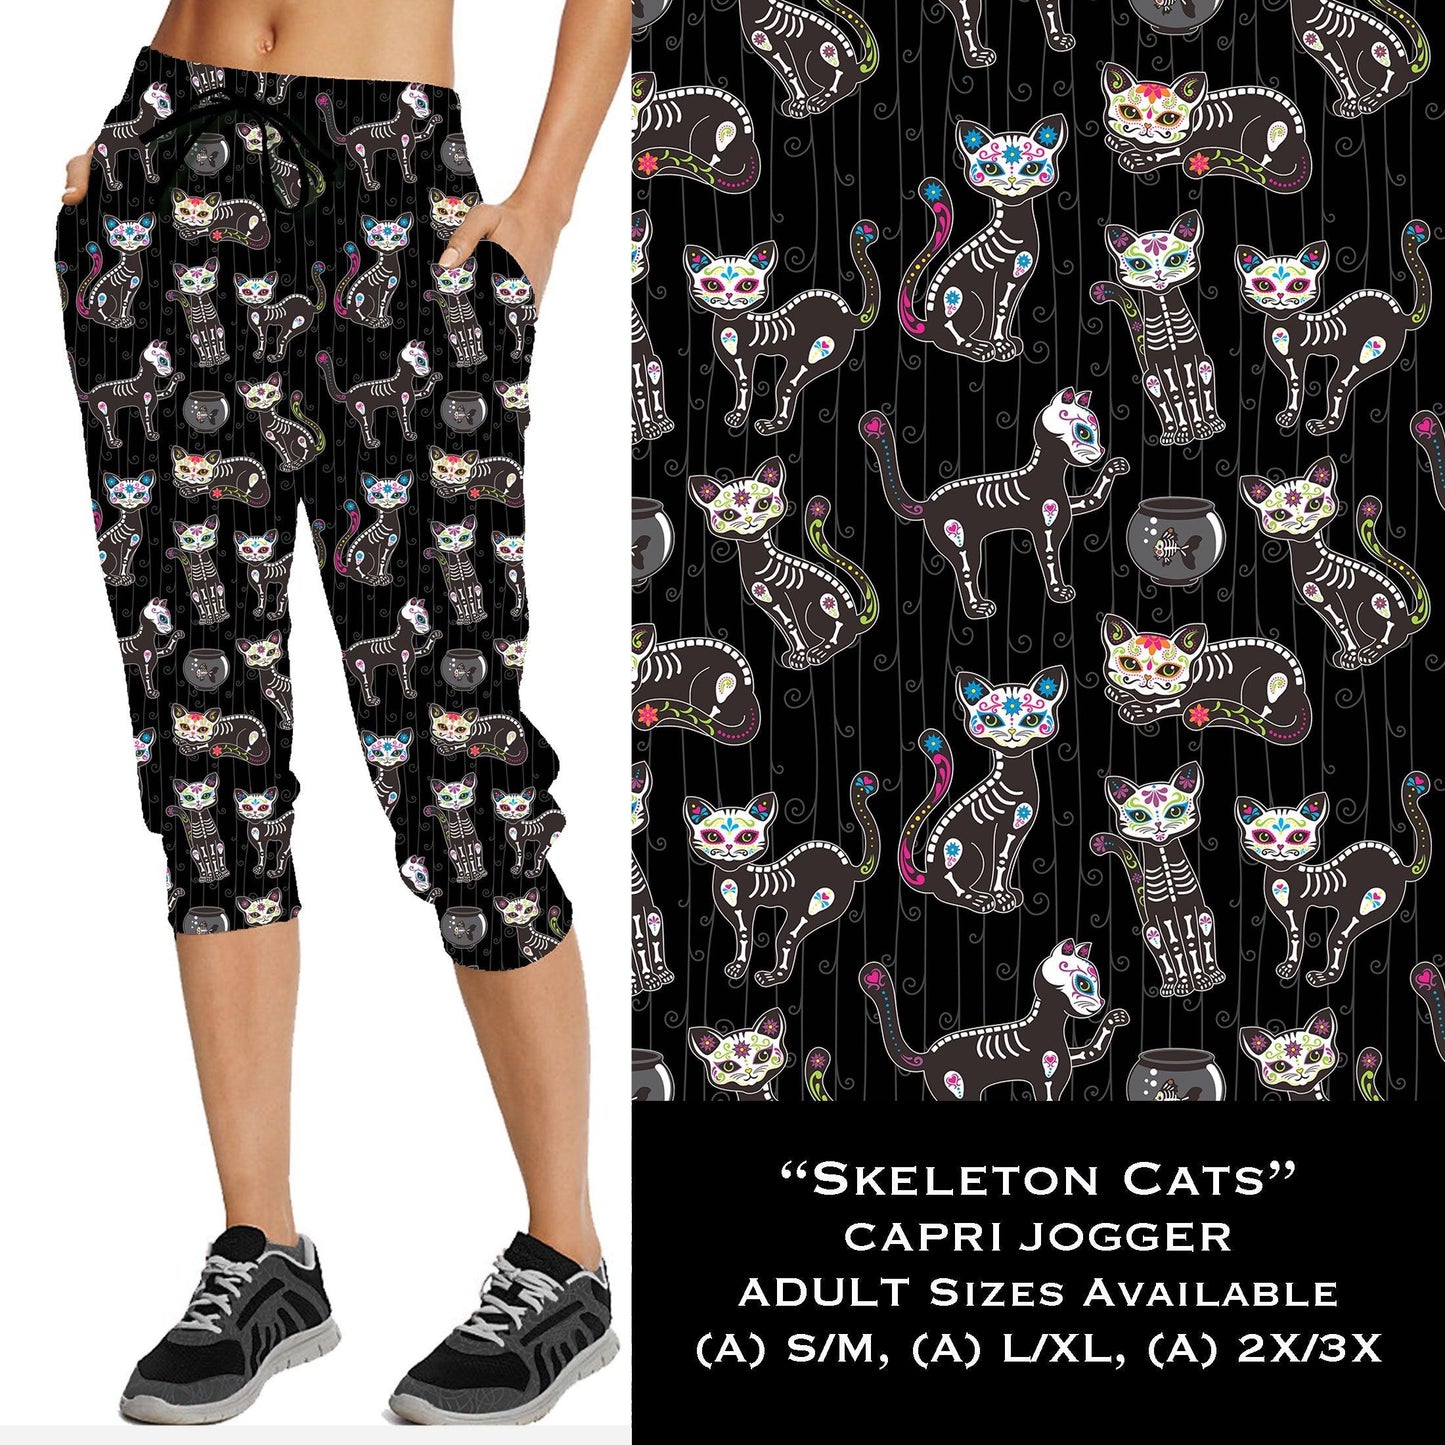 Skeleton Cats - Full & Capri Joggers